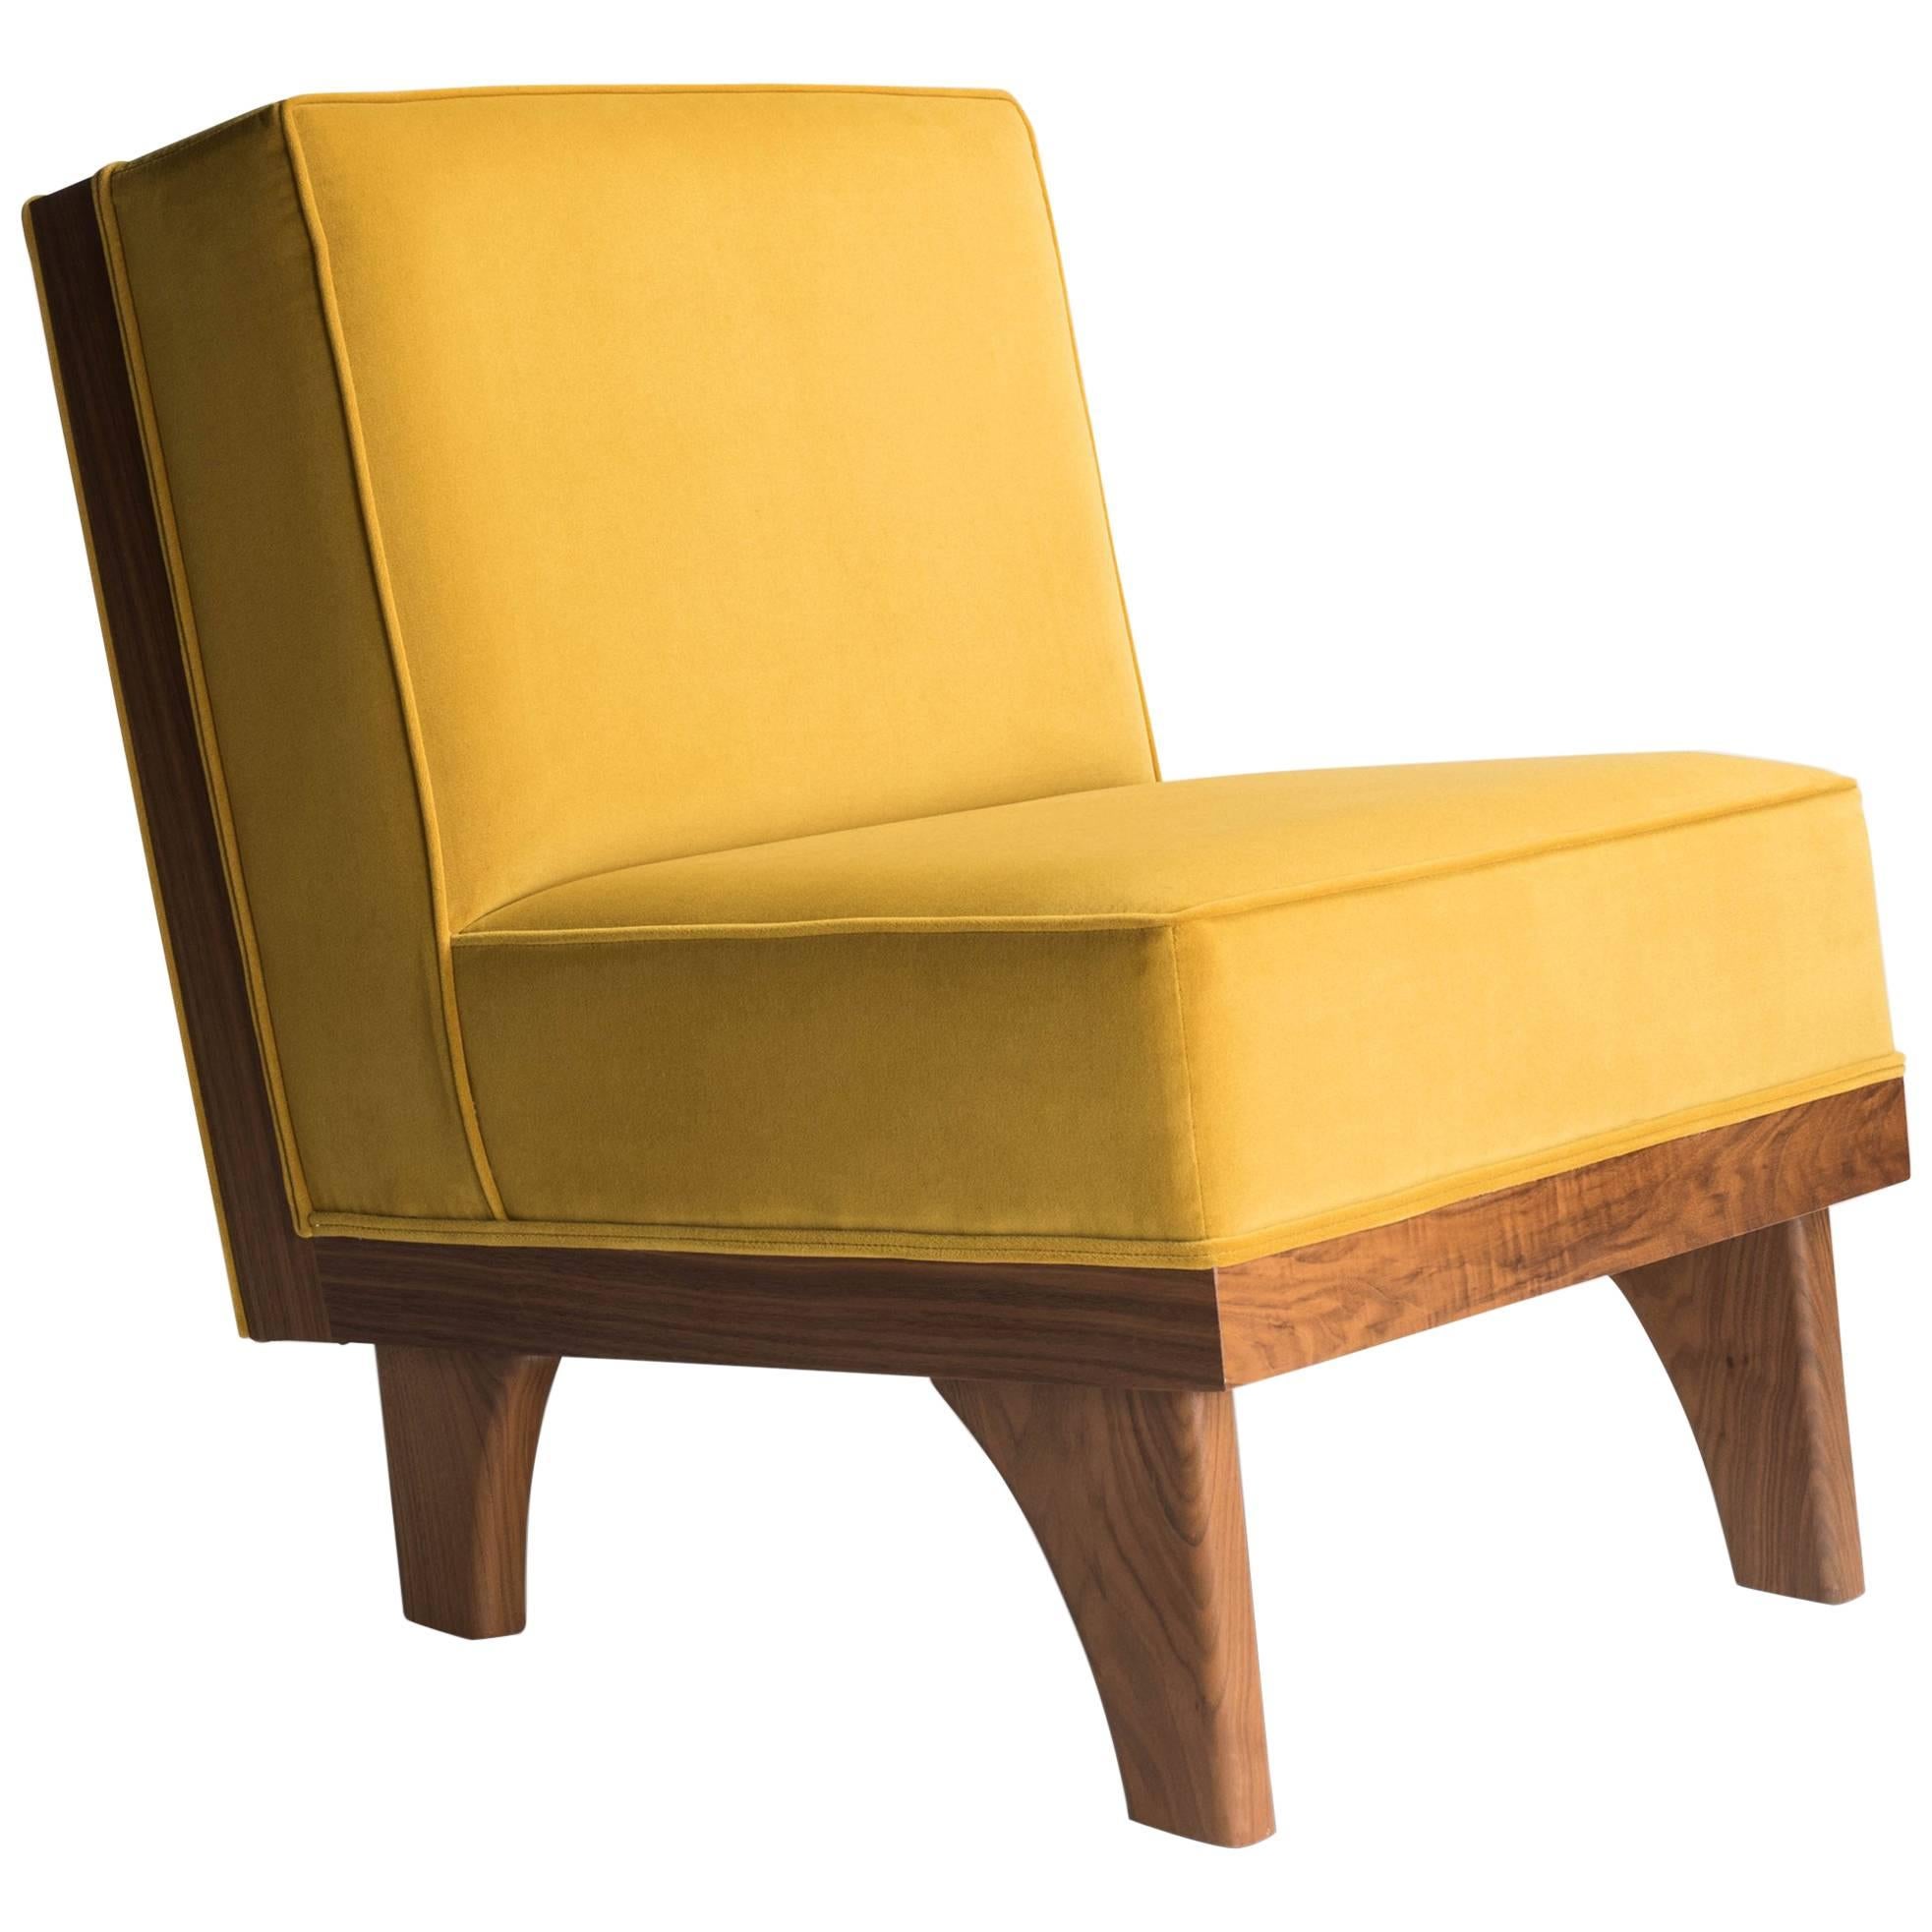 Midcentury, Line Lounge Chair by Michael van Beuren, Walnut & Velvet, by LUTECA